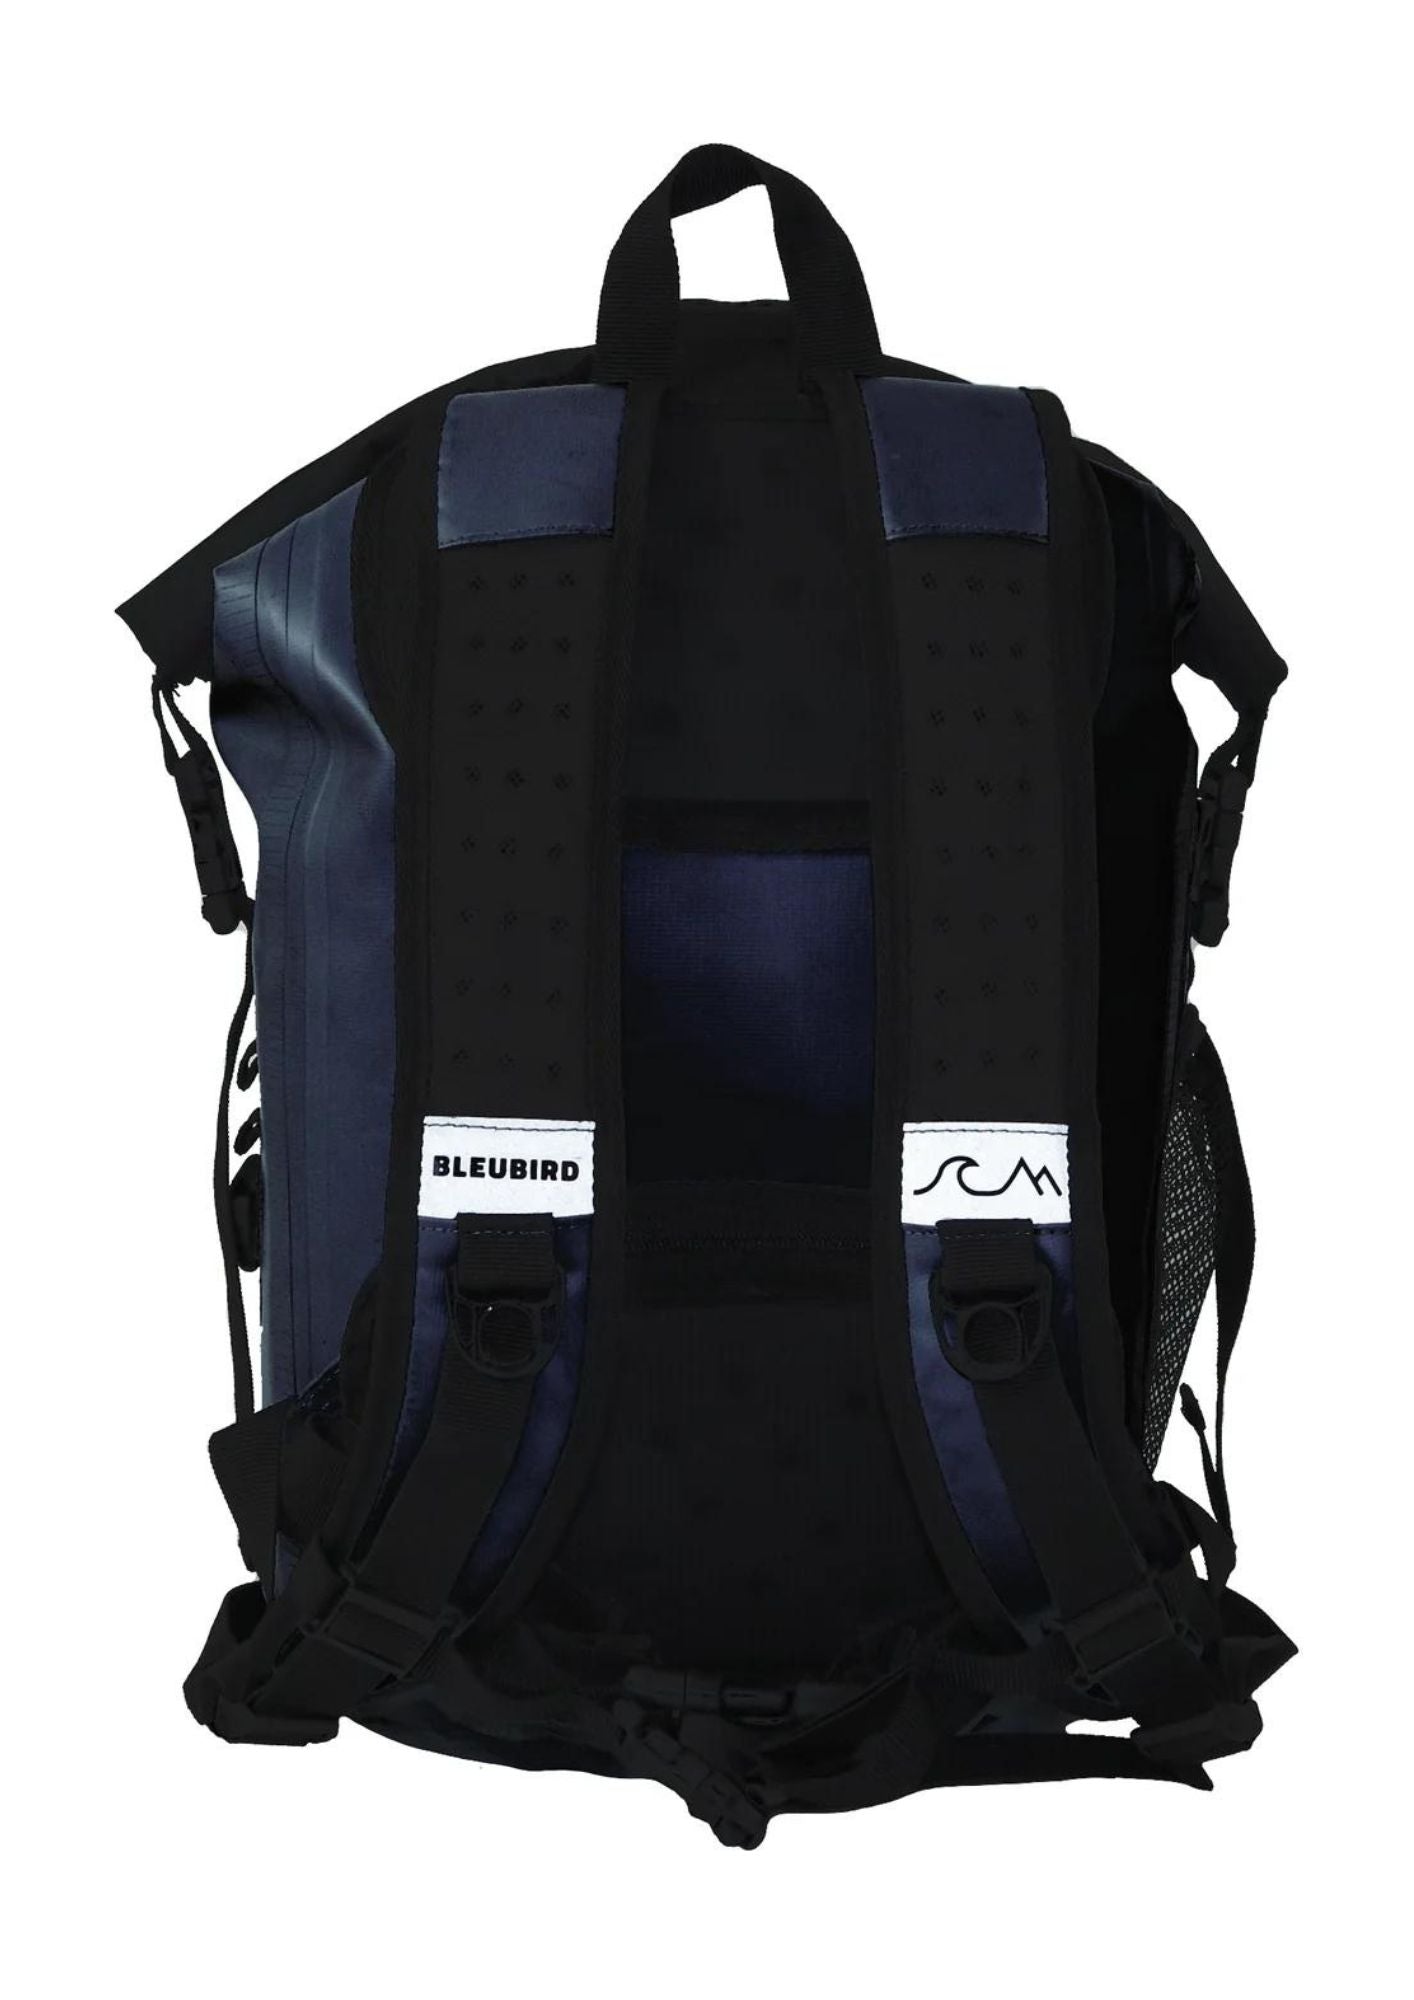 Bleubird 40L Waterproof Backpack | Bleubird | Portwest - The Outdoor Shop